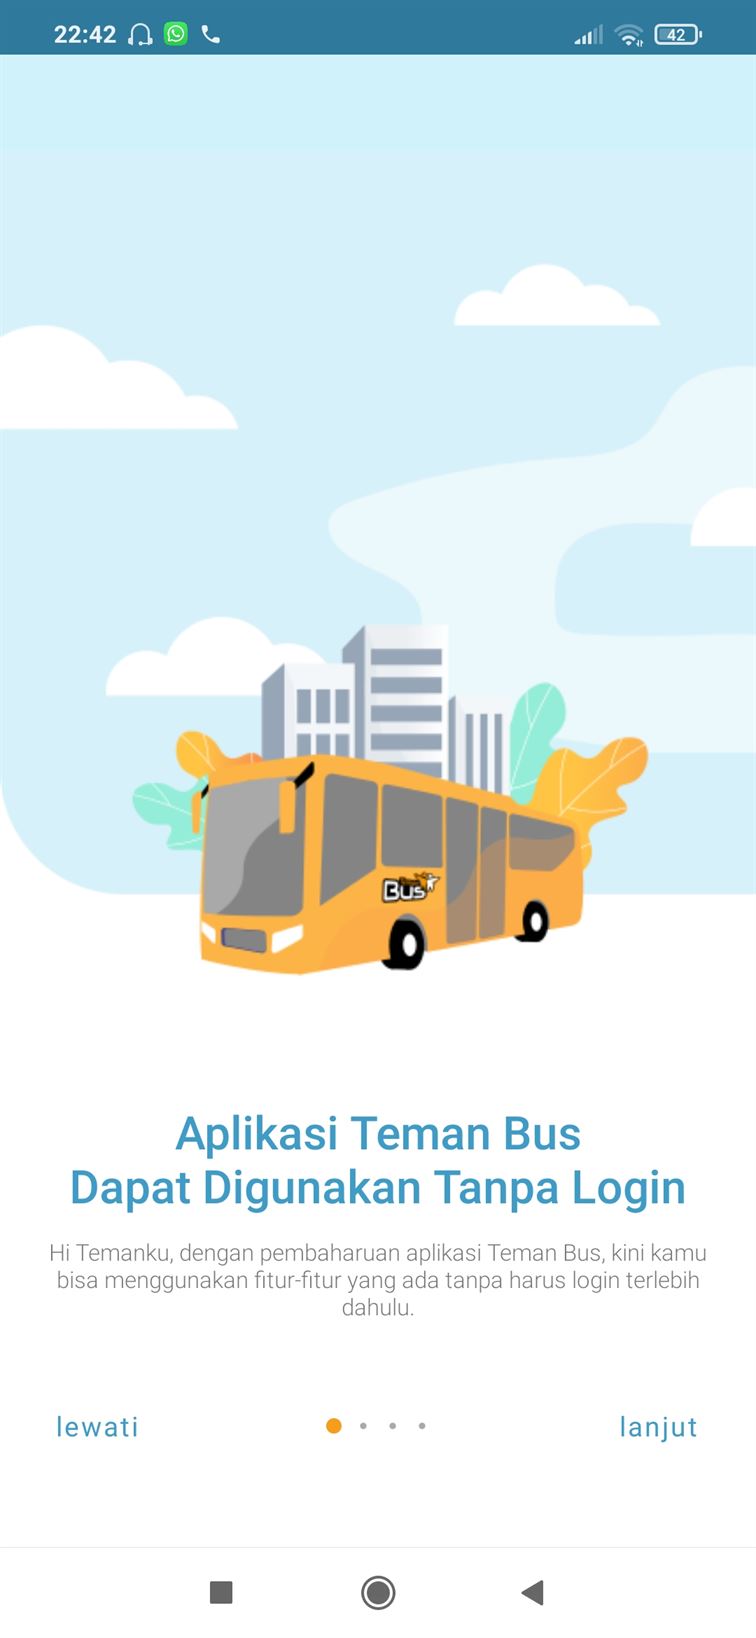 Ucapan Selamat Datang Aplikasi Teman Bus.jpg